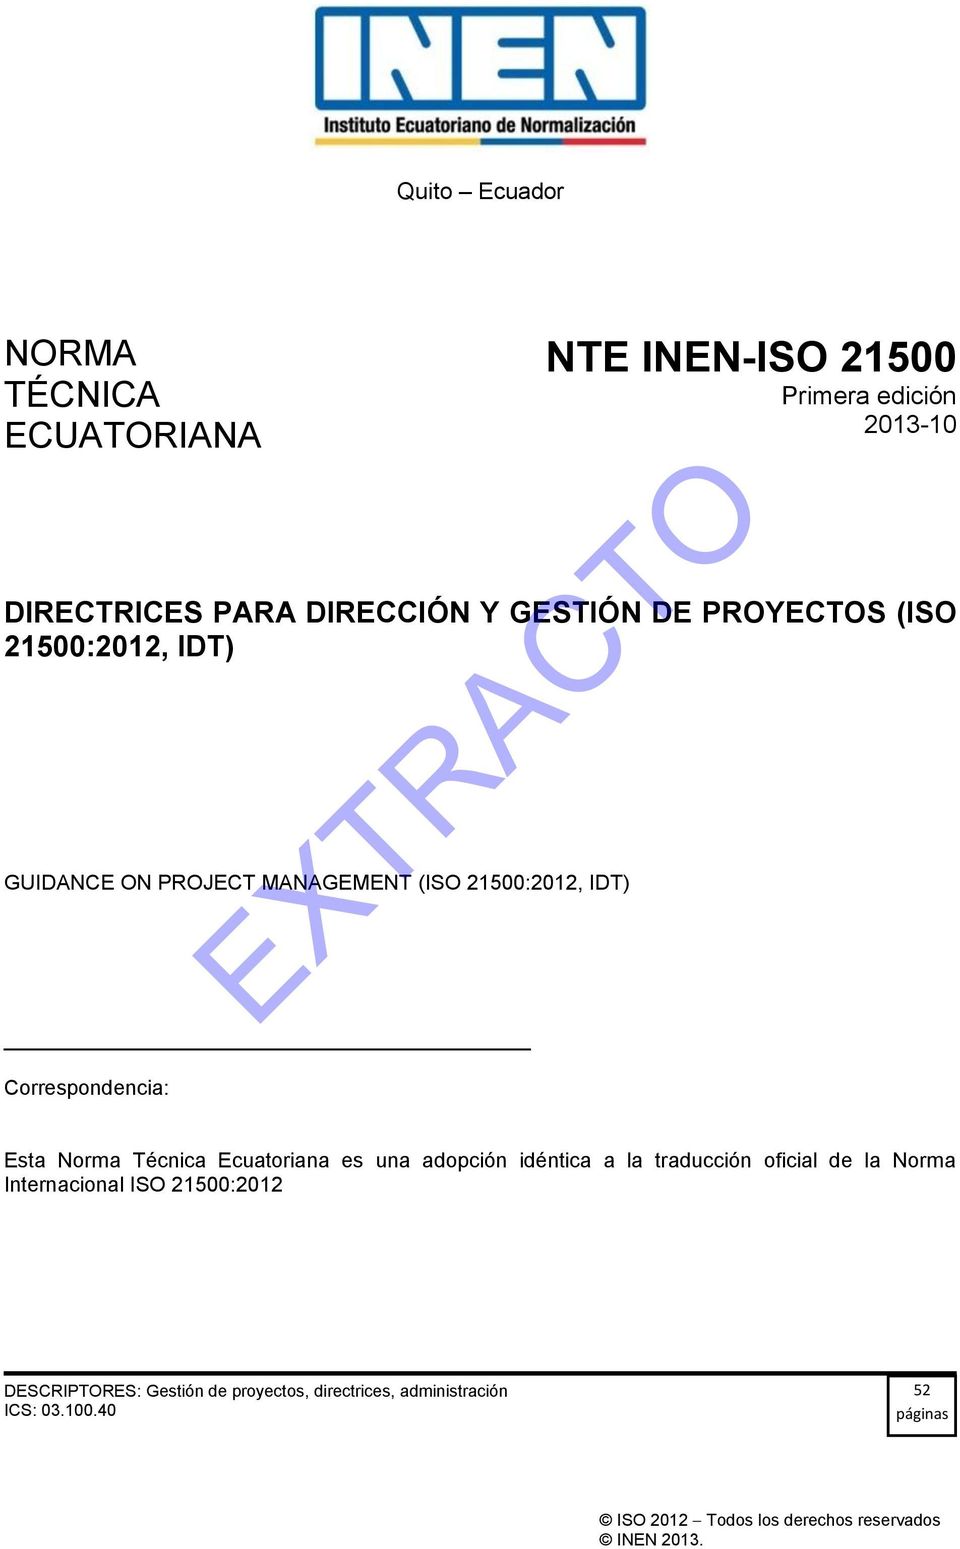 Técnica Ecuatoriana es una adopción idéntica a la traducción oficial de la Norma Internacional ISO 21500:2012